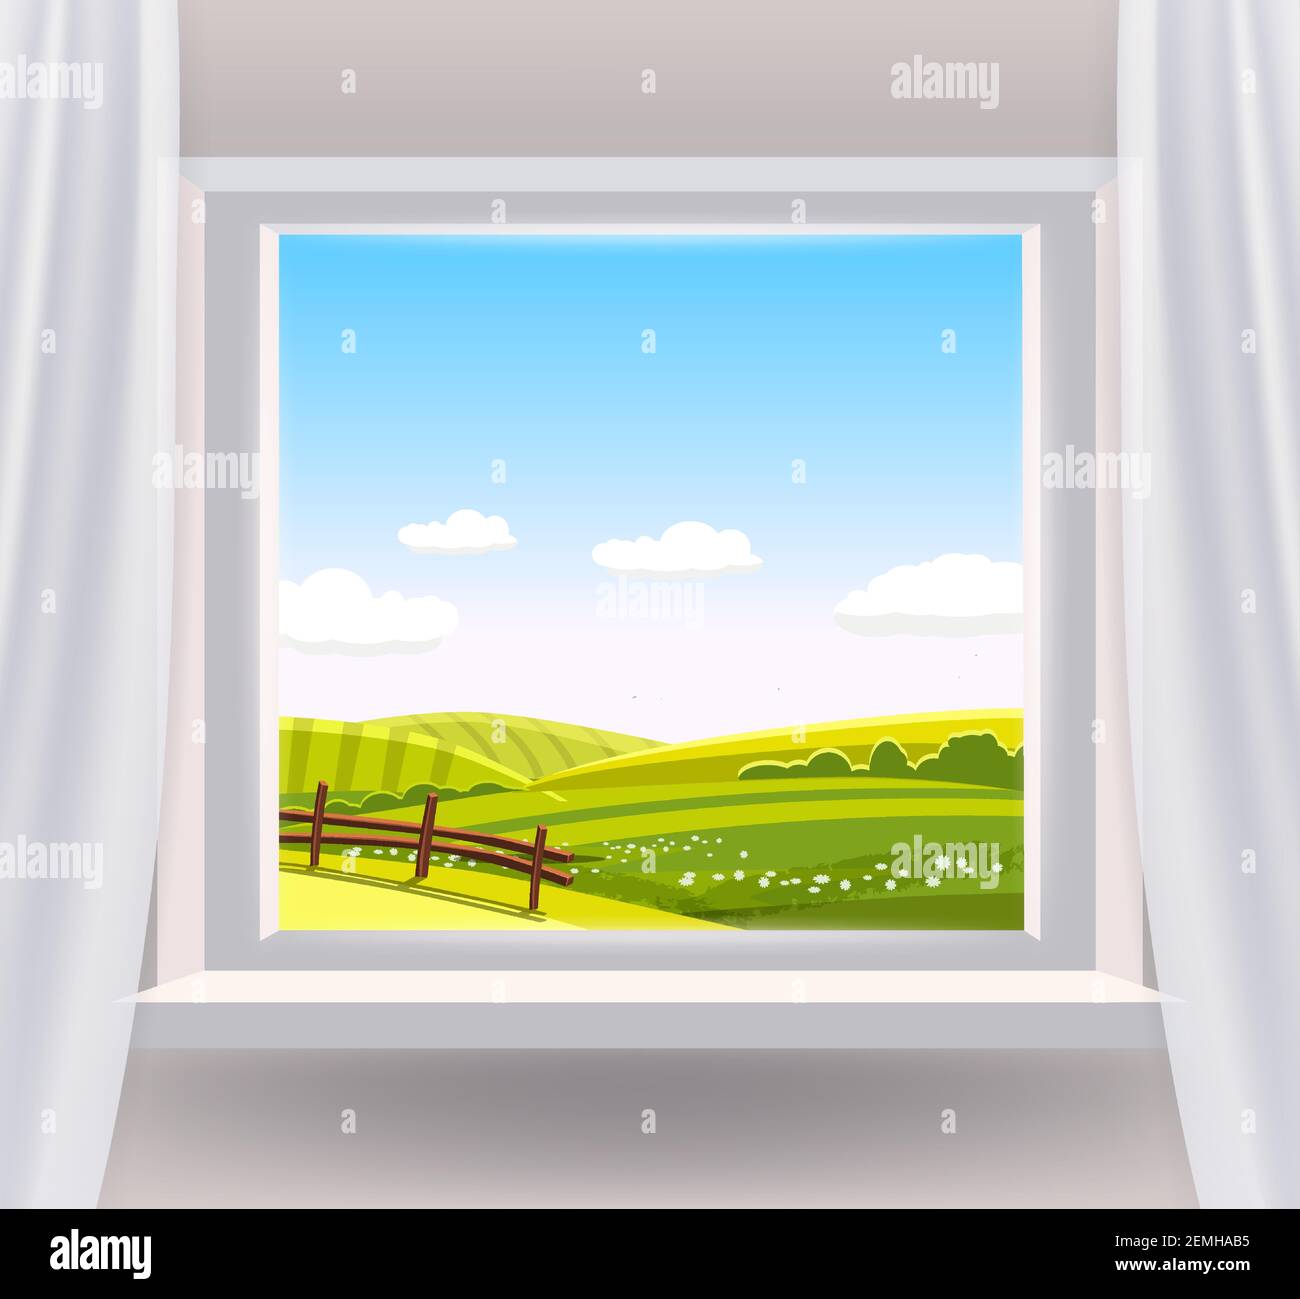 Offenes Fenster Innenhaus mit einer ländlichen Landschaft Blick auf die  Natur. Land Frühling Sommer Landschaft aus Sicht das Fenster der grünen  Wiese Felder Panorama Stock-Vektorgrafik - Alamy